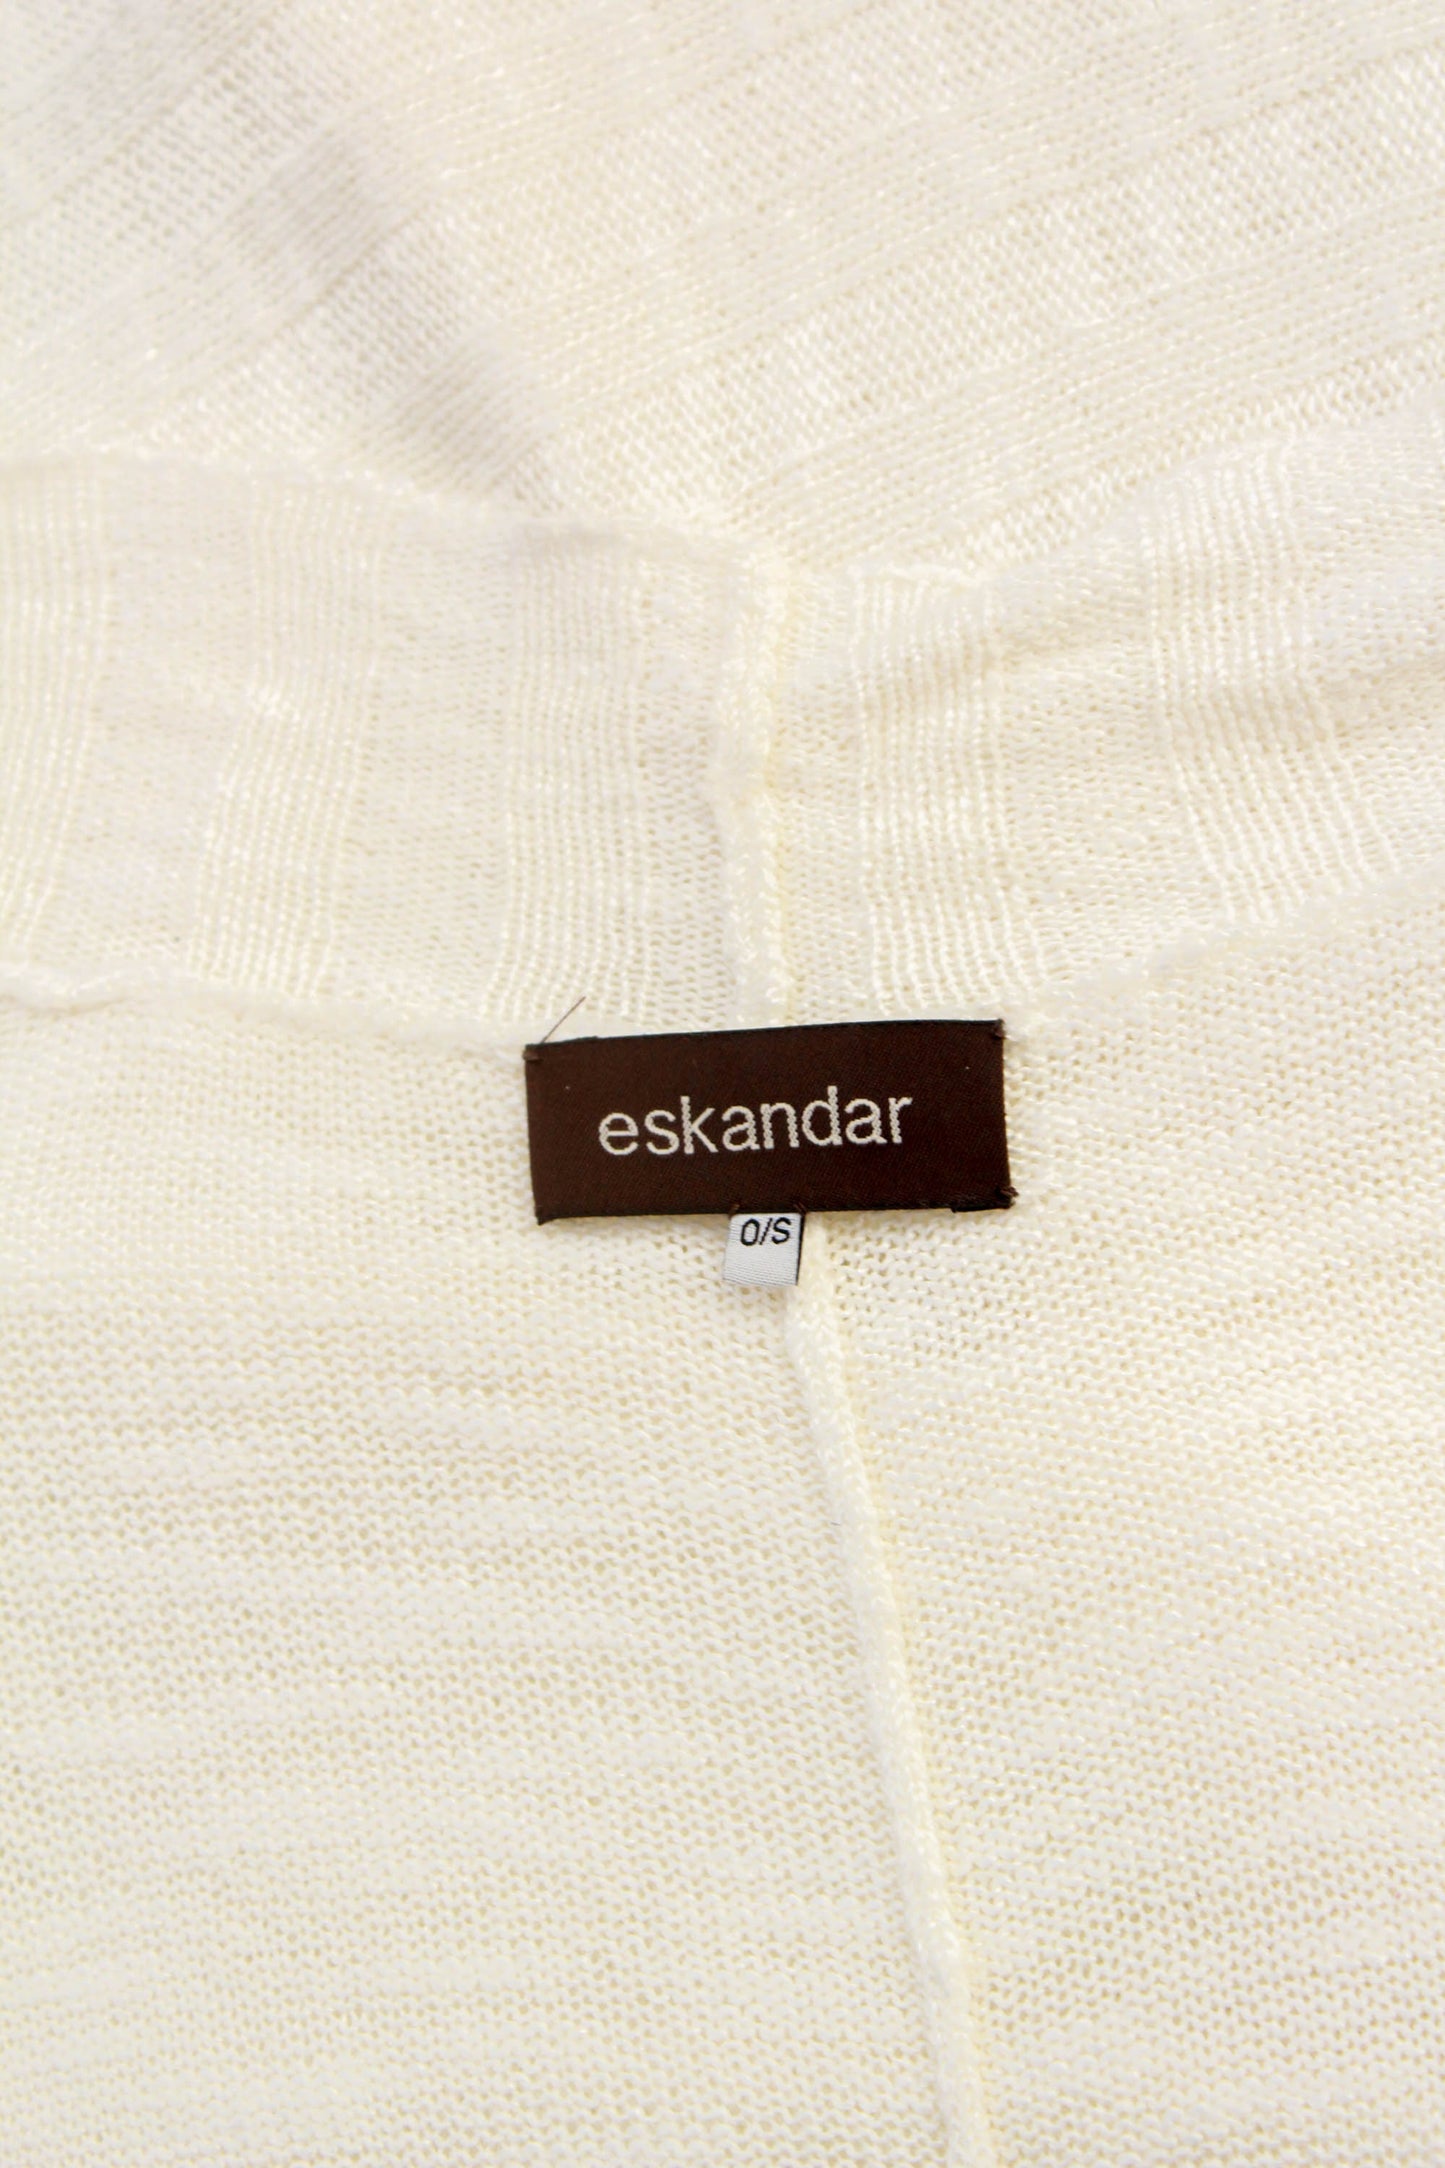 Eskandar hand loomed in Scotland white linen blend long cardigan 